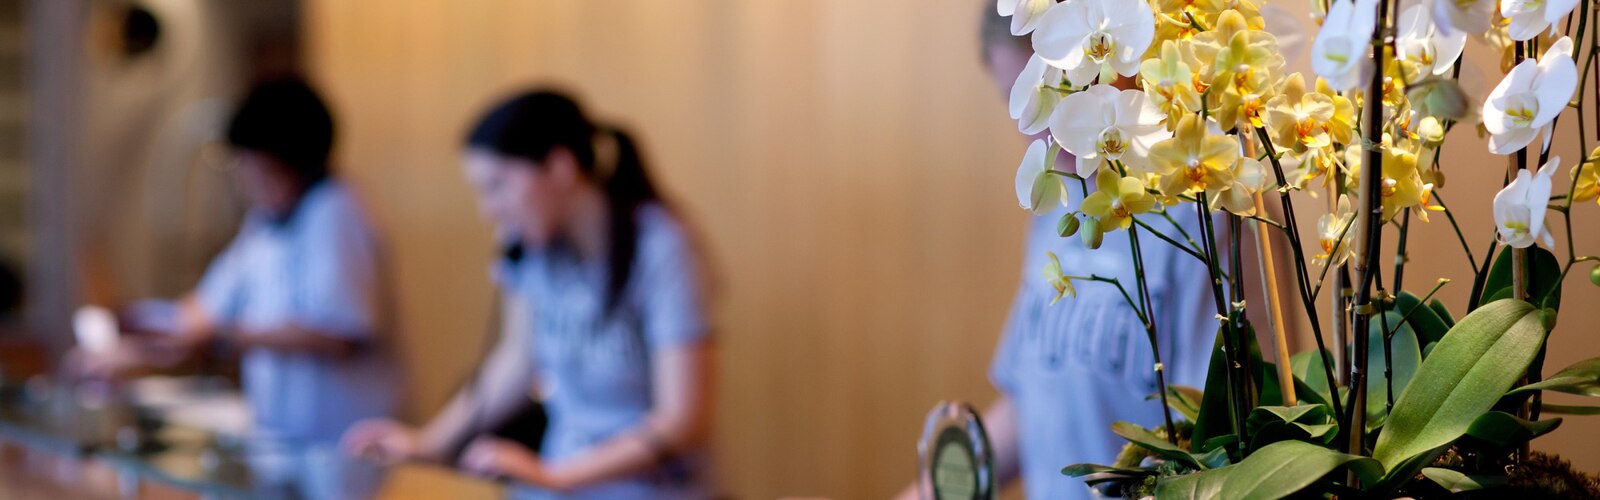 Un pot d’orchidée à la réception d’un hôtel, avec trois réceptionnistes en arrière-plan